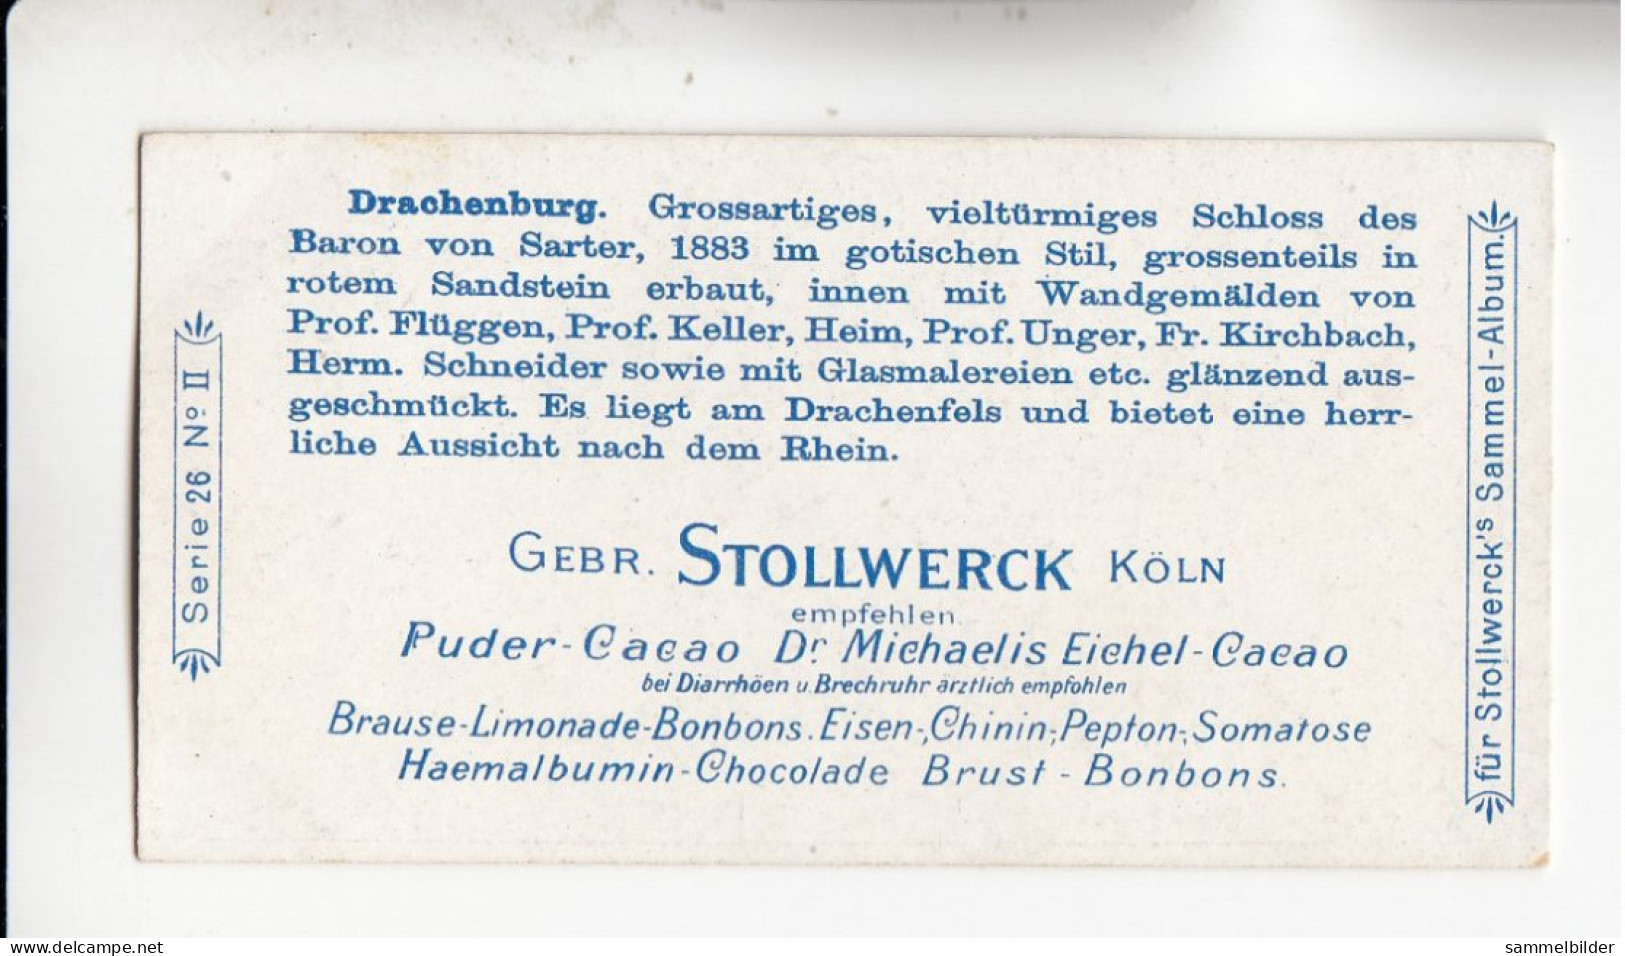 Stollwerck Album No 1 Rhein Schlösser Und Burgen  Drachenburg Mit Zahnradbahn  Gruppe 26 #2 Von 1897 - Stollwerck